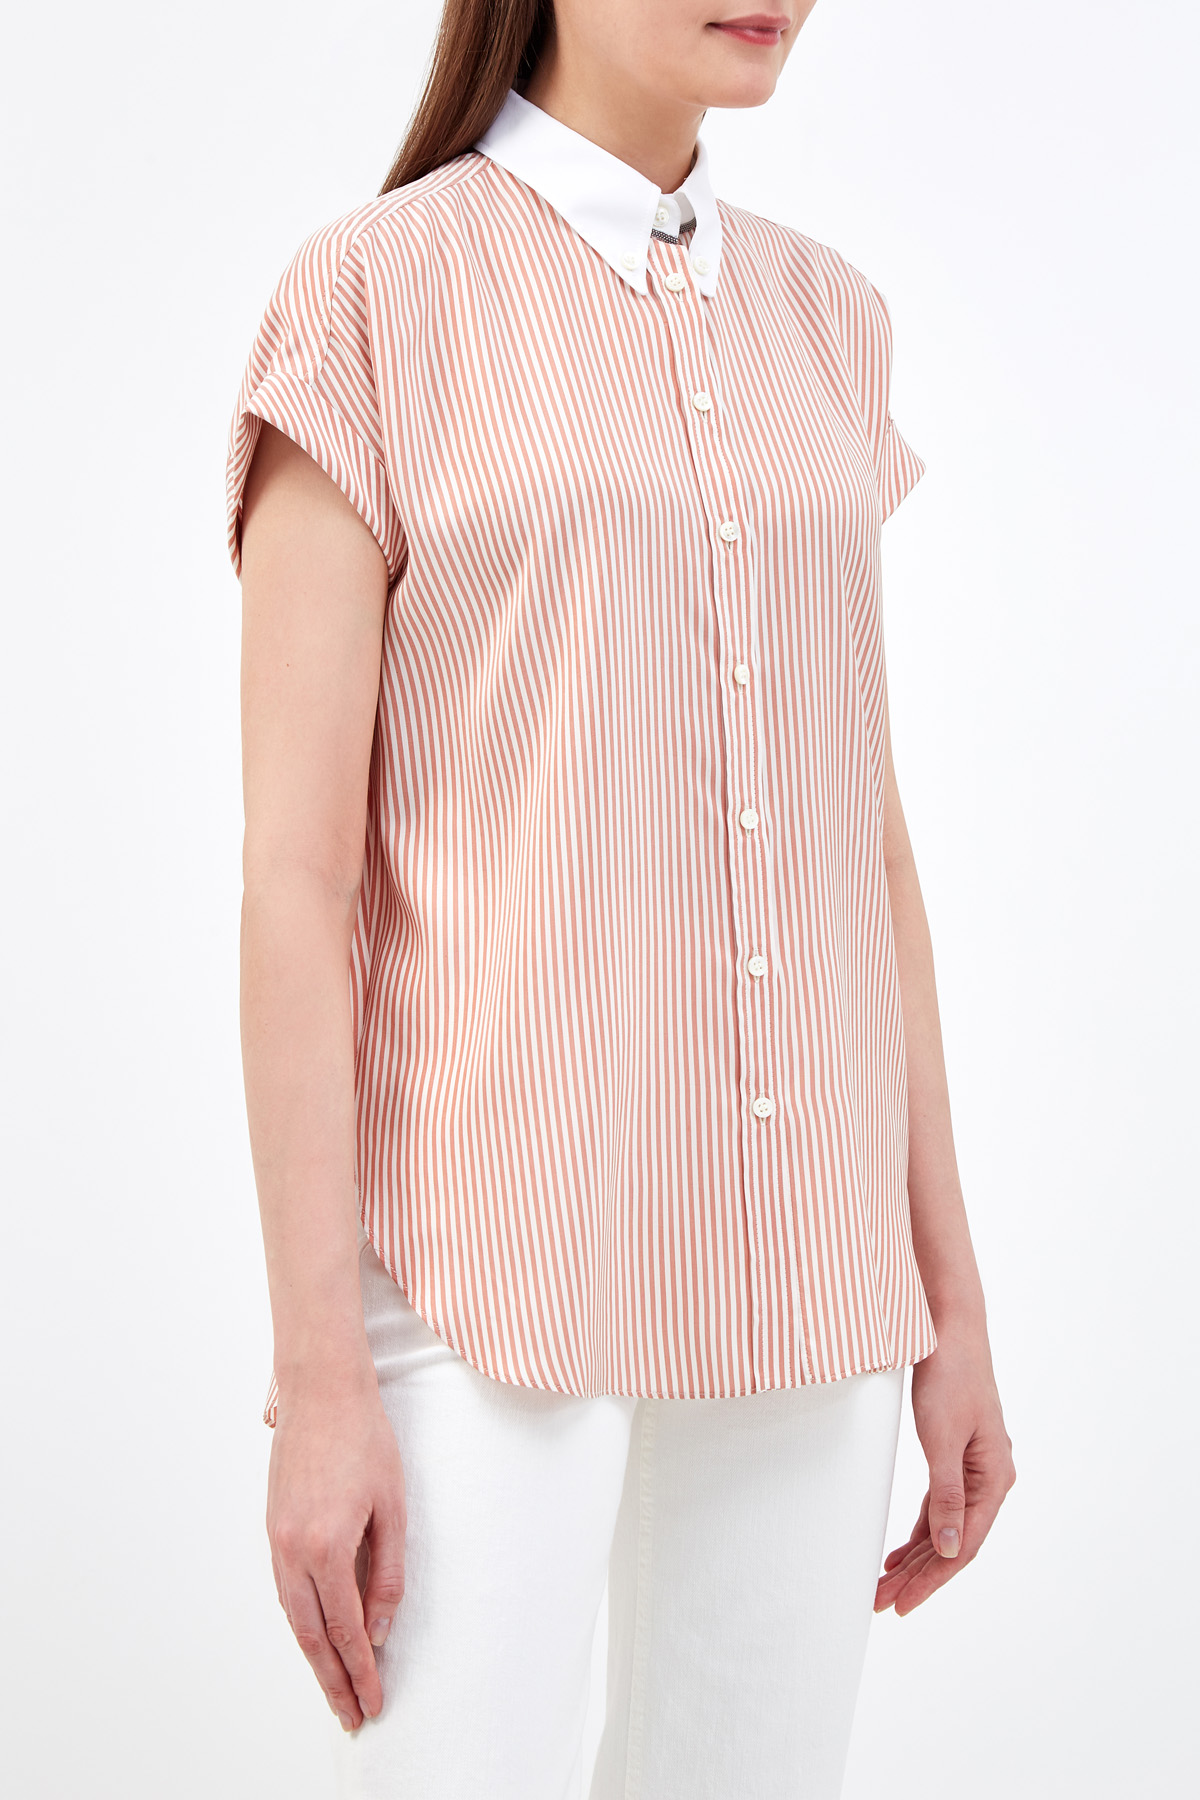 Шелковая блуза в полоску с контрастным воротником BRUNELLO CUCINELLI, цвет мульти, размер 40;44;48;38 - фото 3